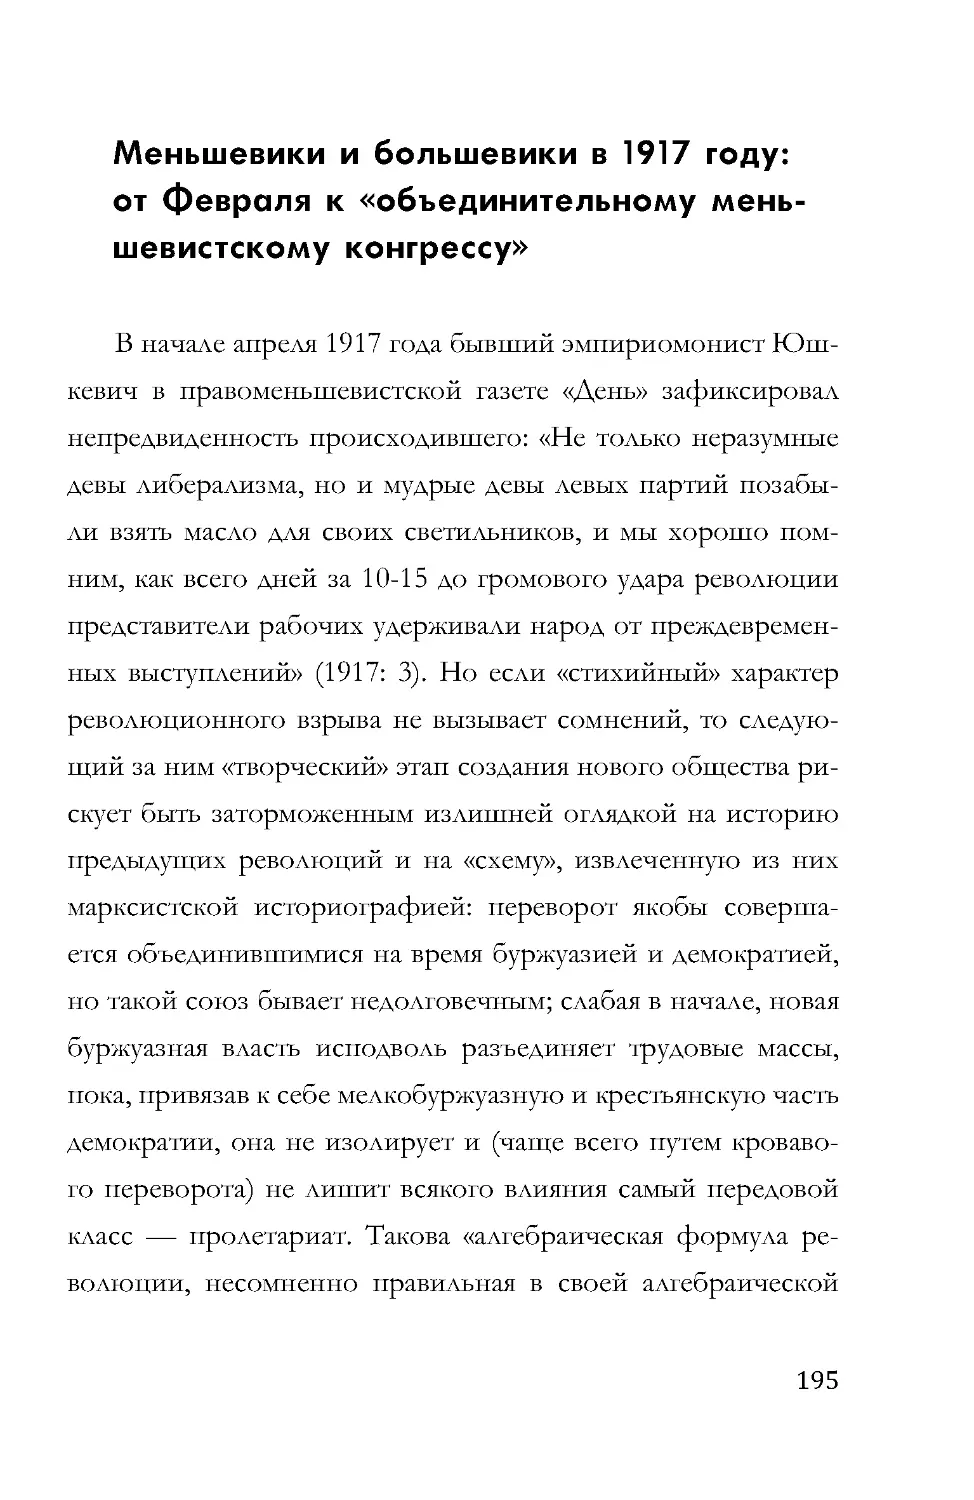 Меньшевики и большевики в 1917 году: от Февраля к «объединительному меньшевистскому конгрессу»